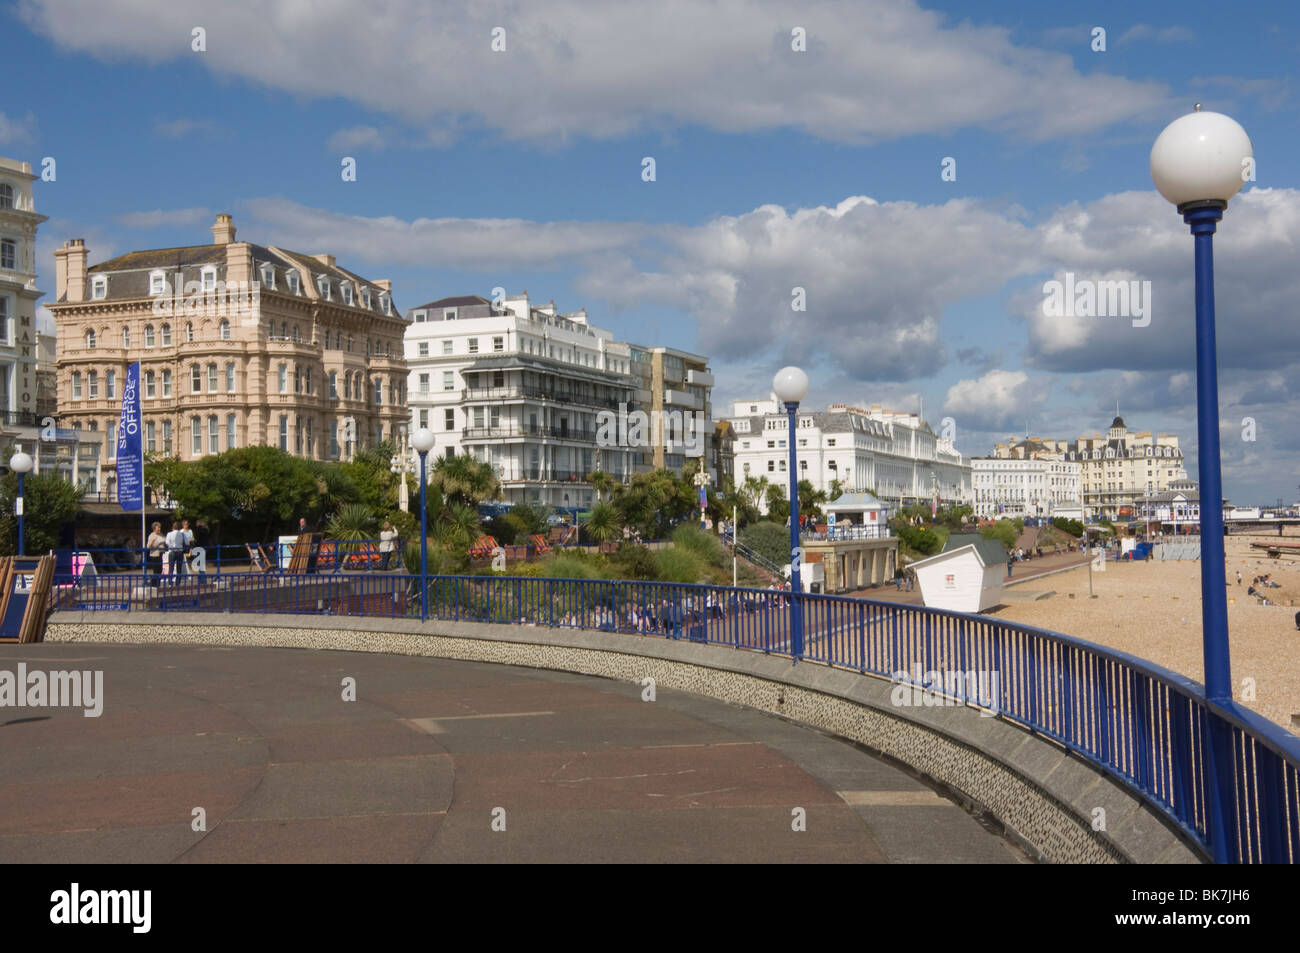 Le front de mer de Eastbourne, East Sussex, Angleterre, Royaume-Uni, Europe Banque D'Images